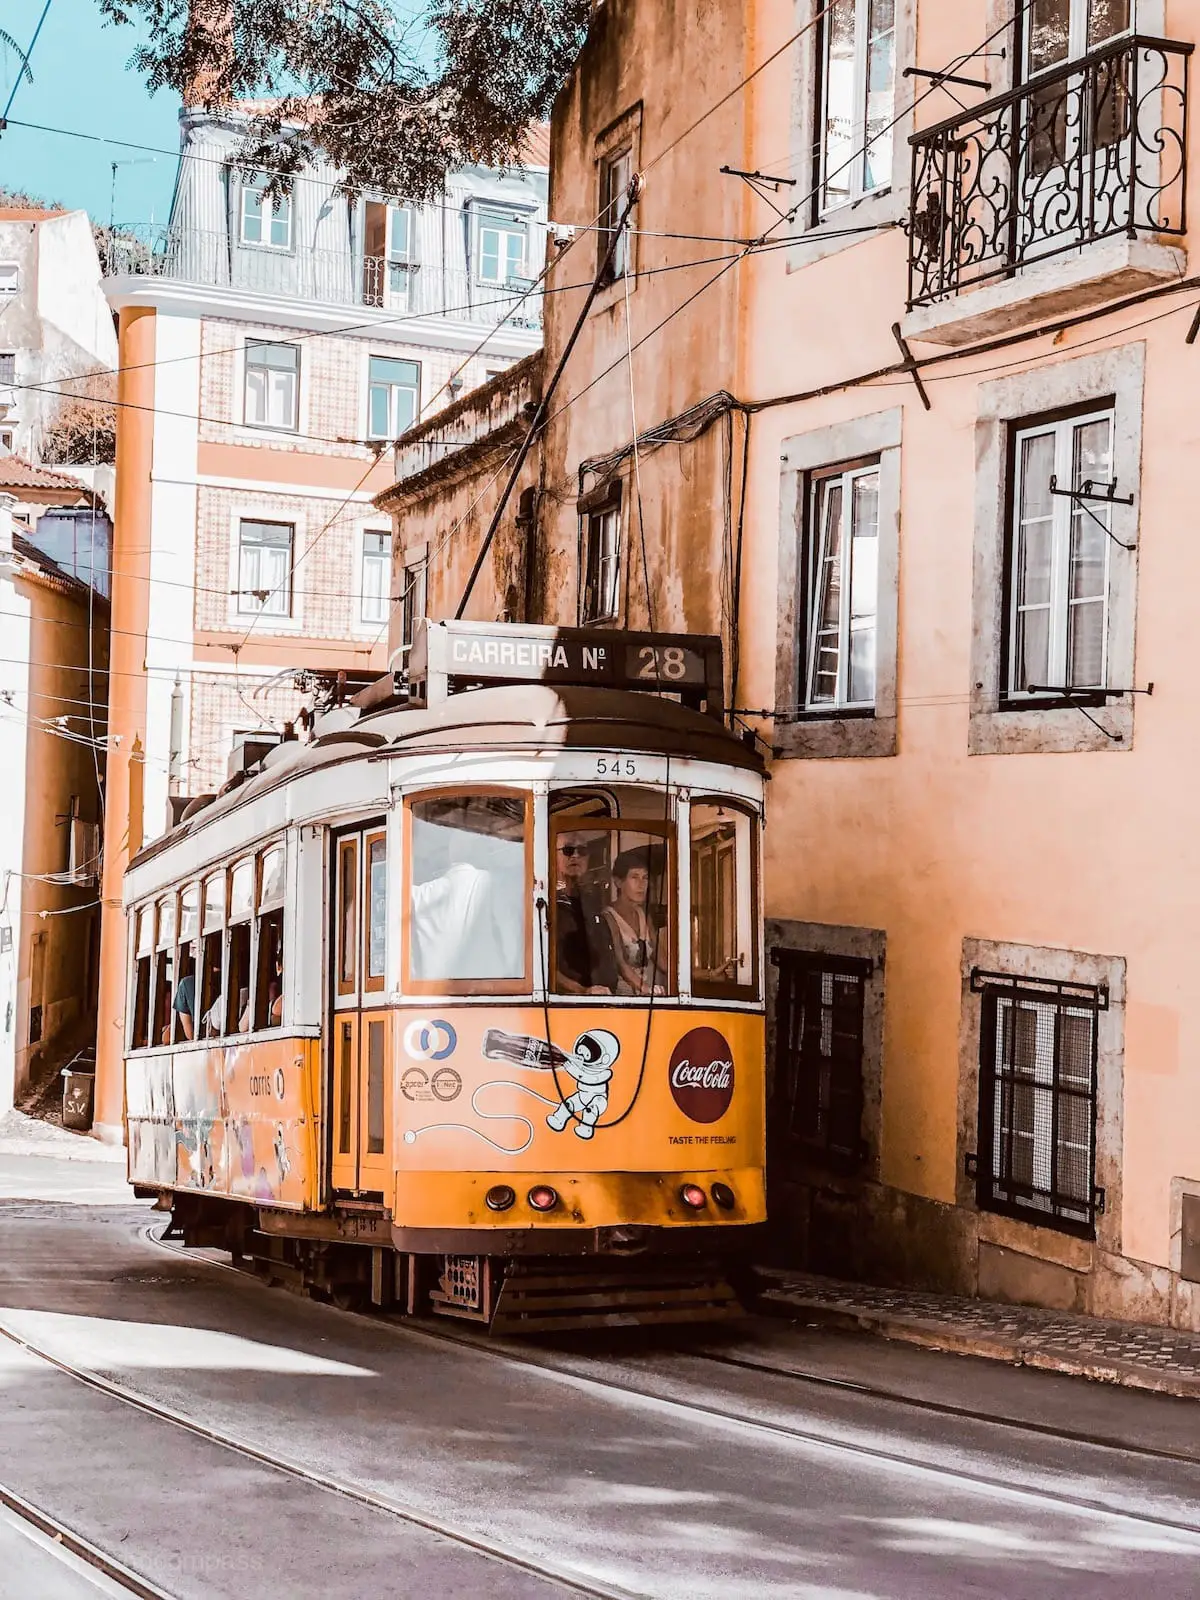 Städtereise Lissabon Portugal, Lissabon Städtetrip Sehenswürdigkeiten, Kurztrip nach Portugal, Porto oder Lissabon, Portugal Rundreise, Lissabon Urlaub